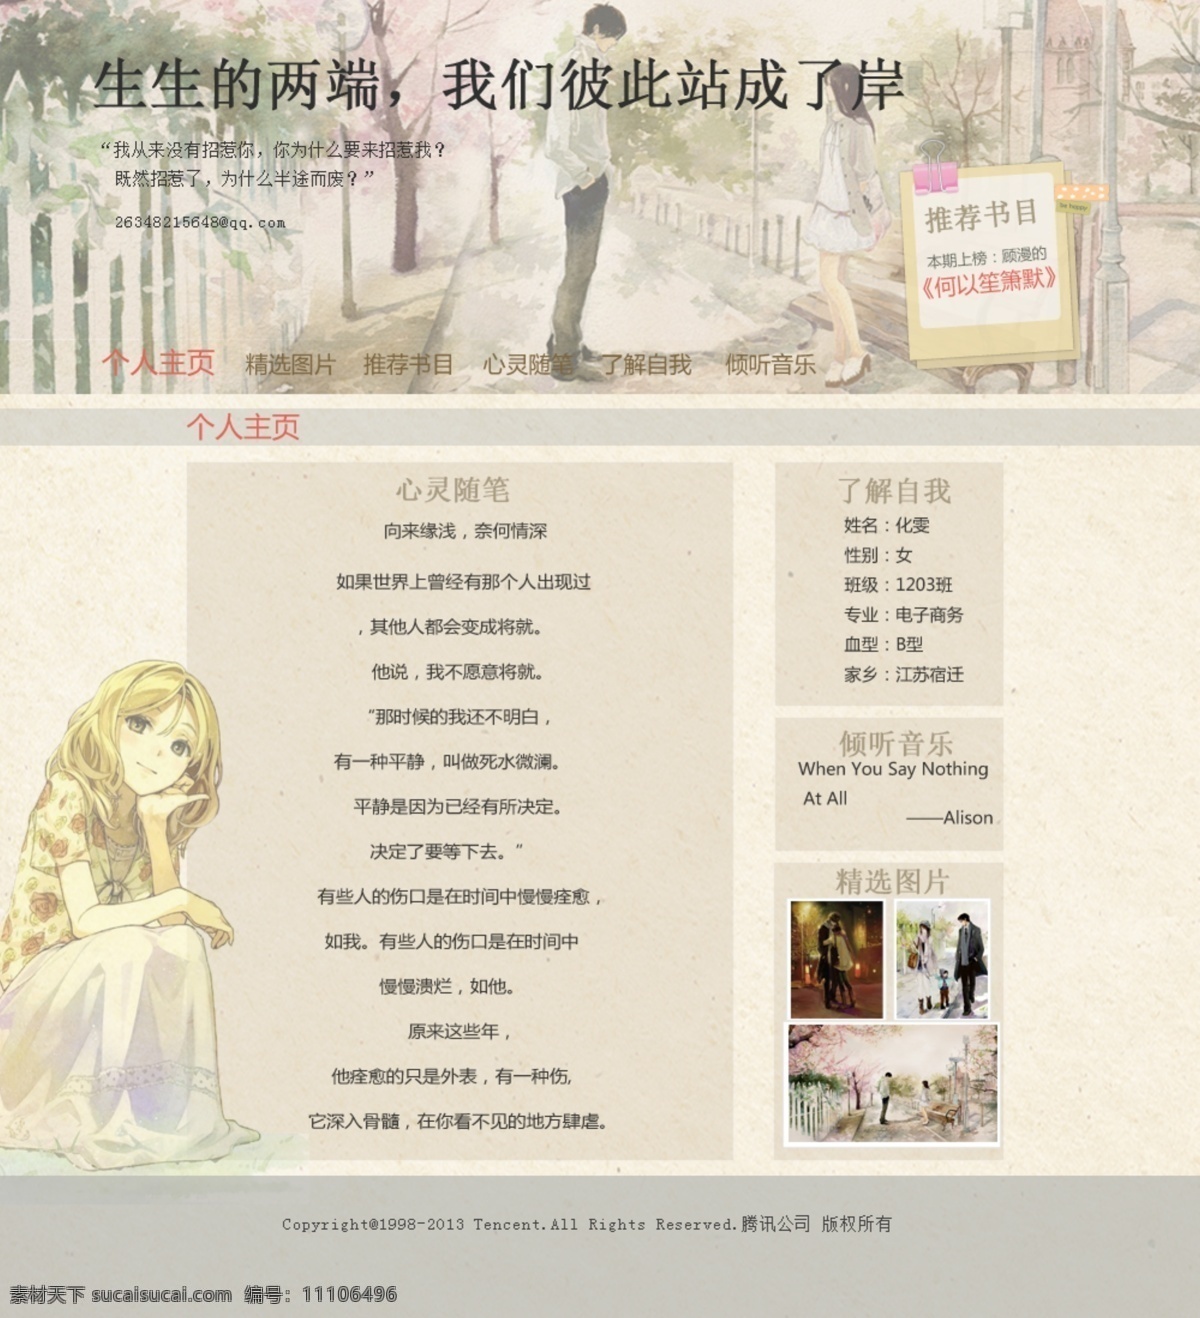 个人主页 模板下载 网页模板 网站 学校 源文件 中文模板 专题 首页 网页素材